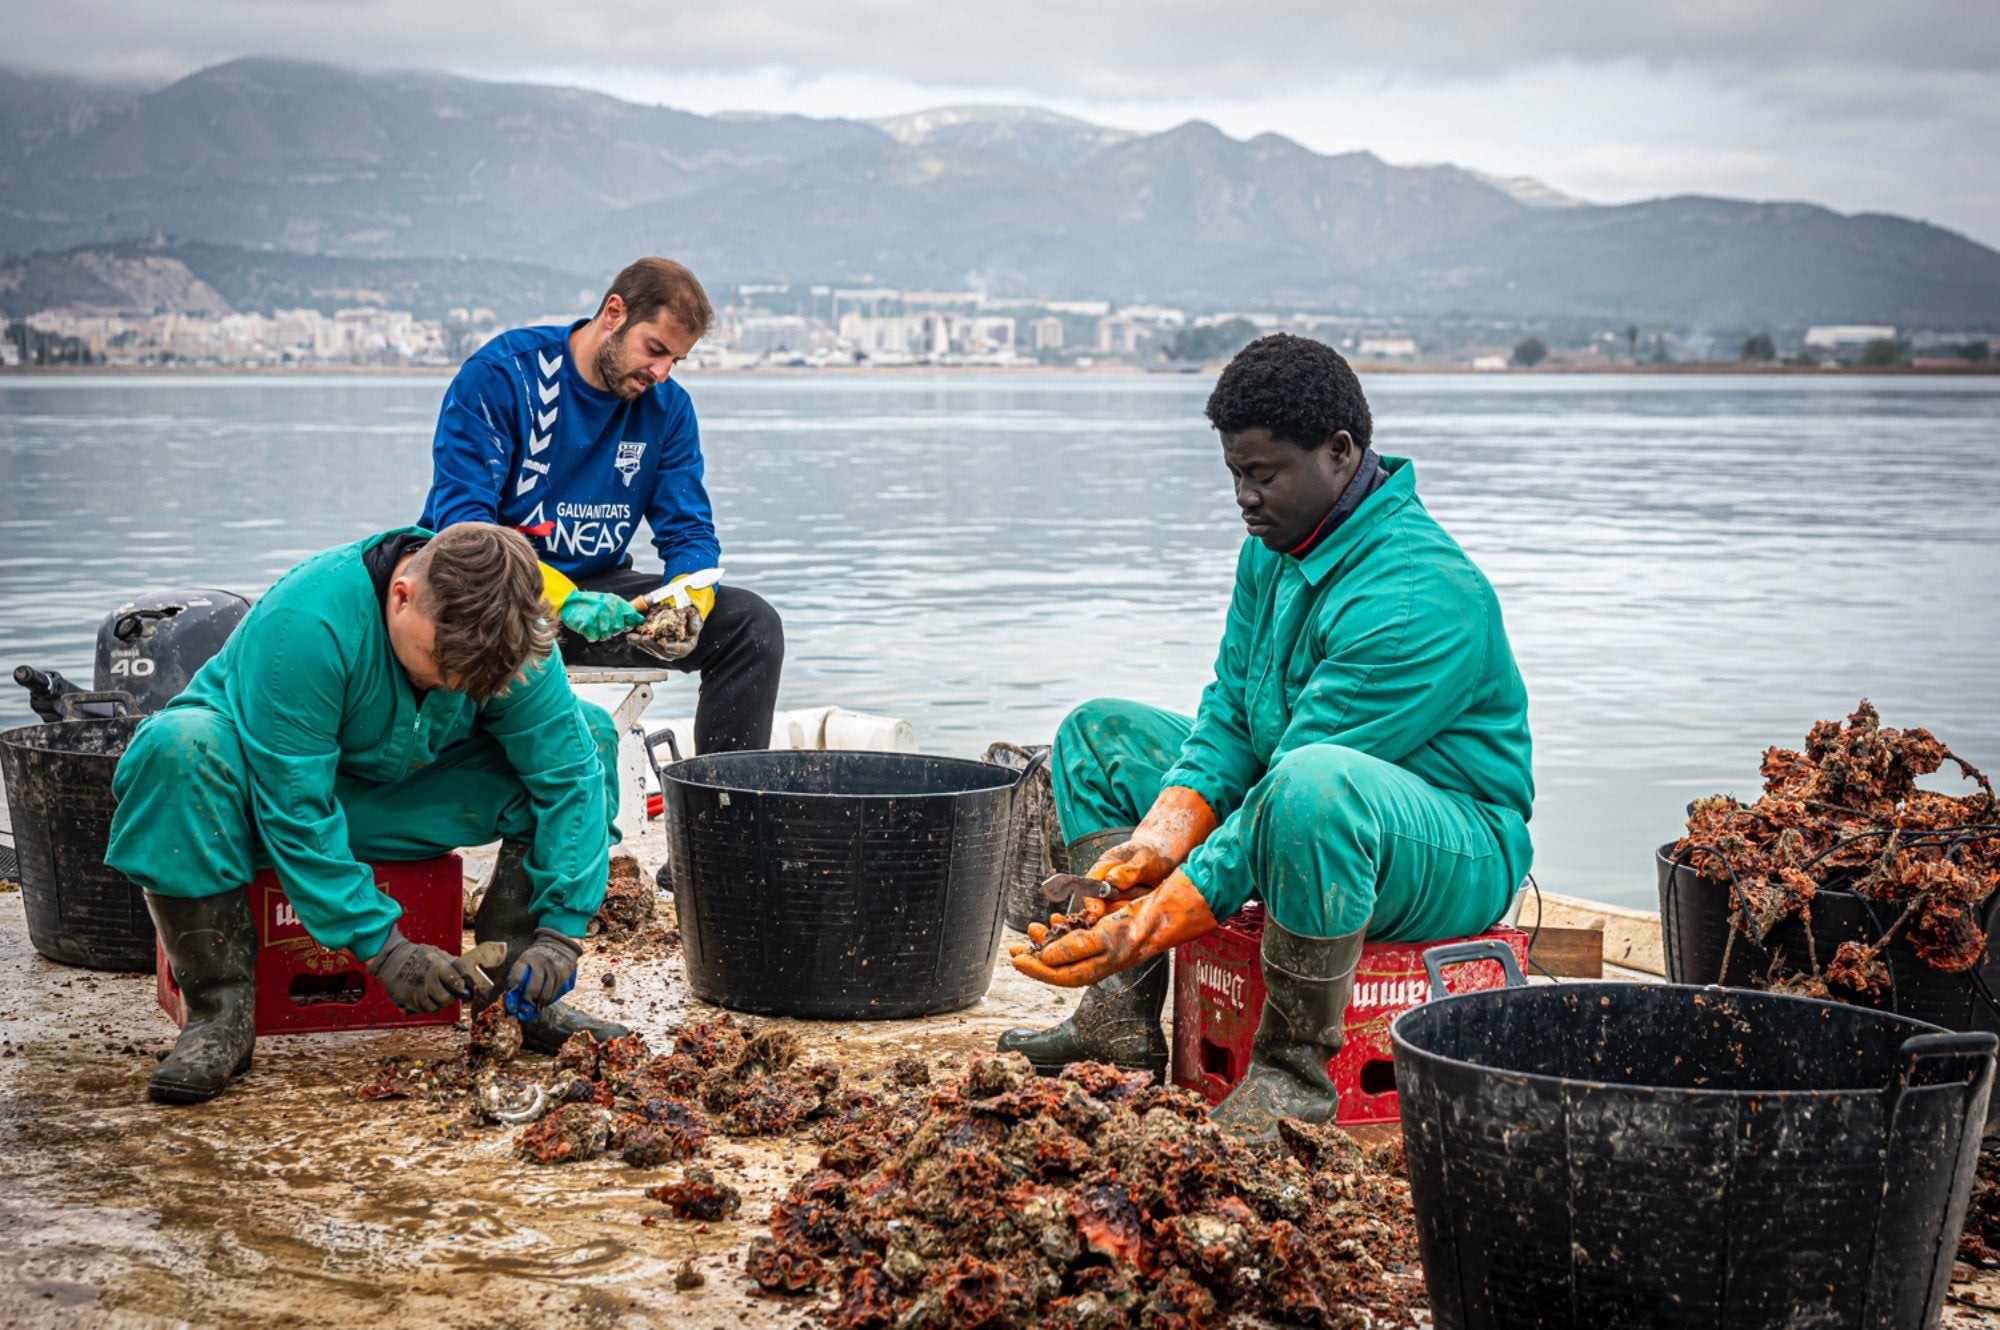 Trabajadores limpiando ostras en la batea de Musclarium